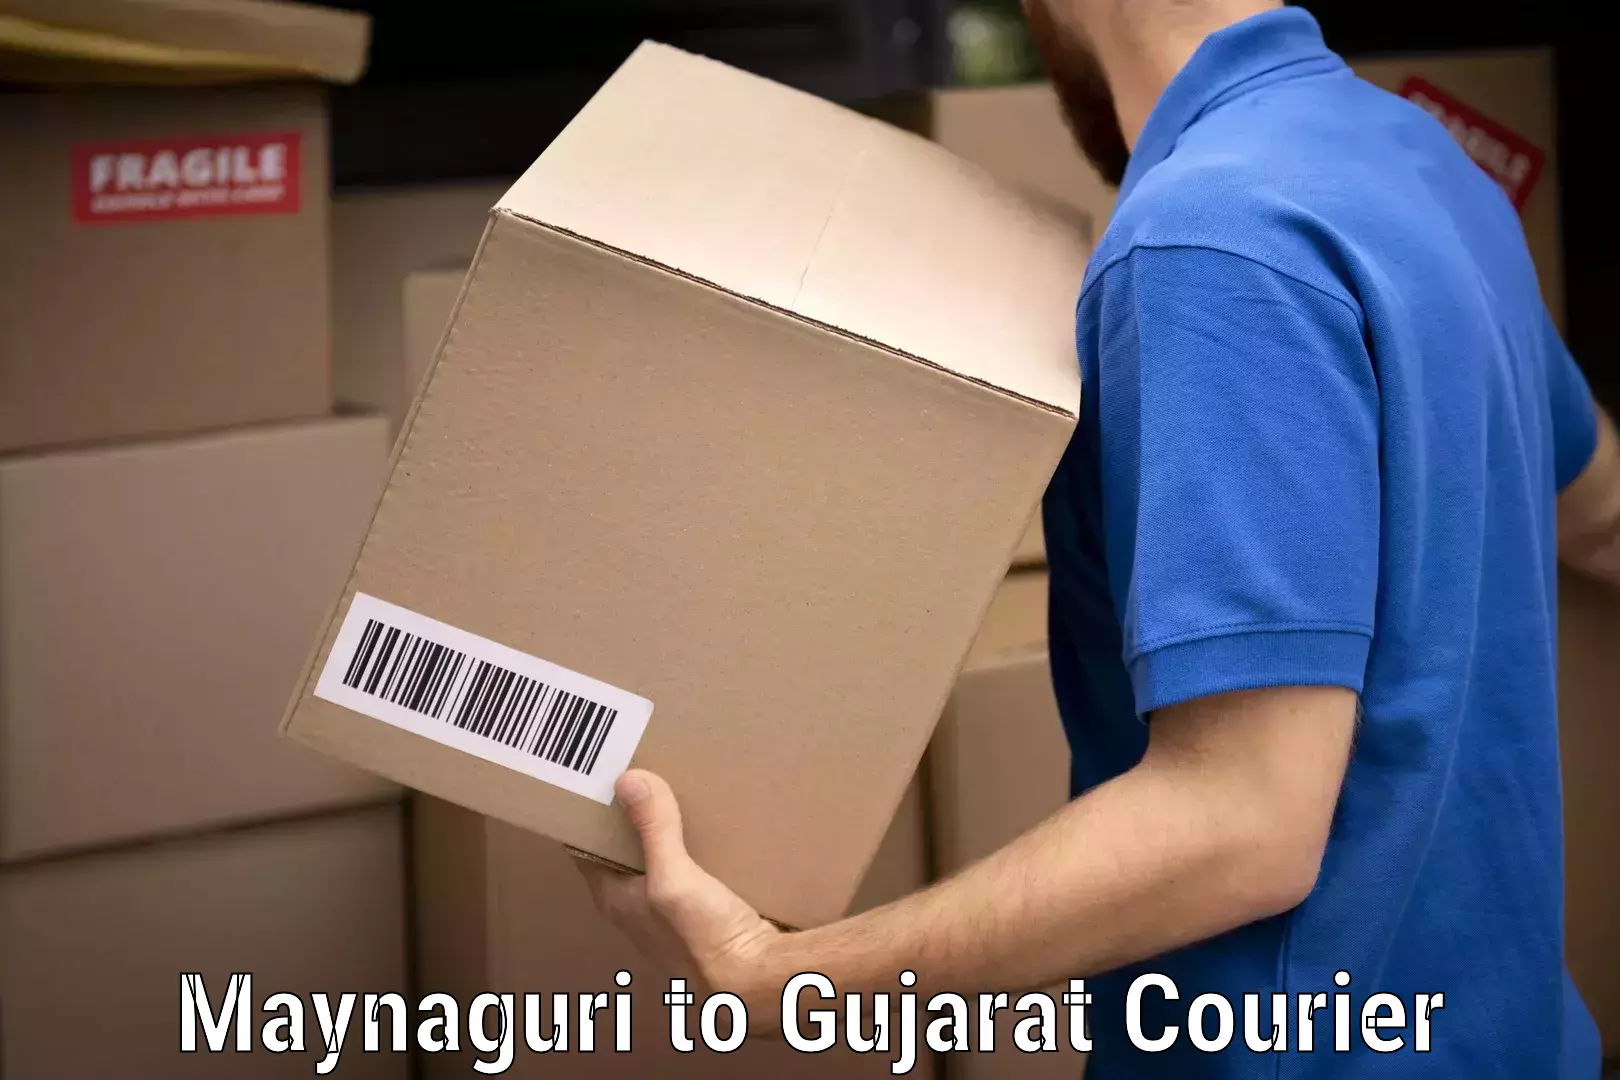 Furniture transport professionals Maynaguri to Gujarat